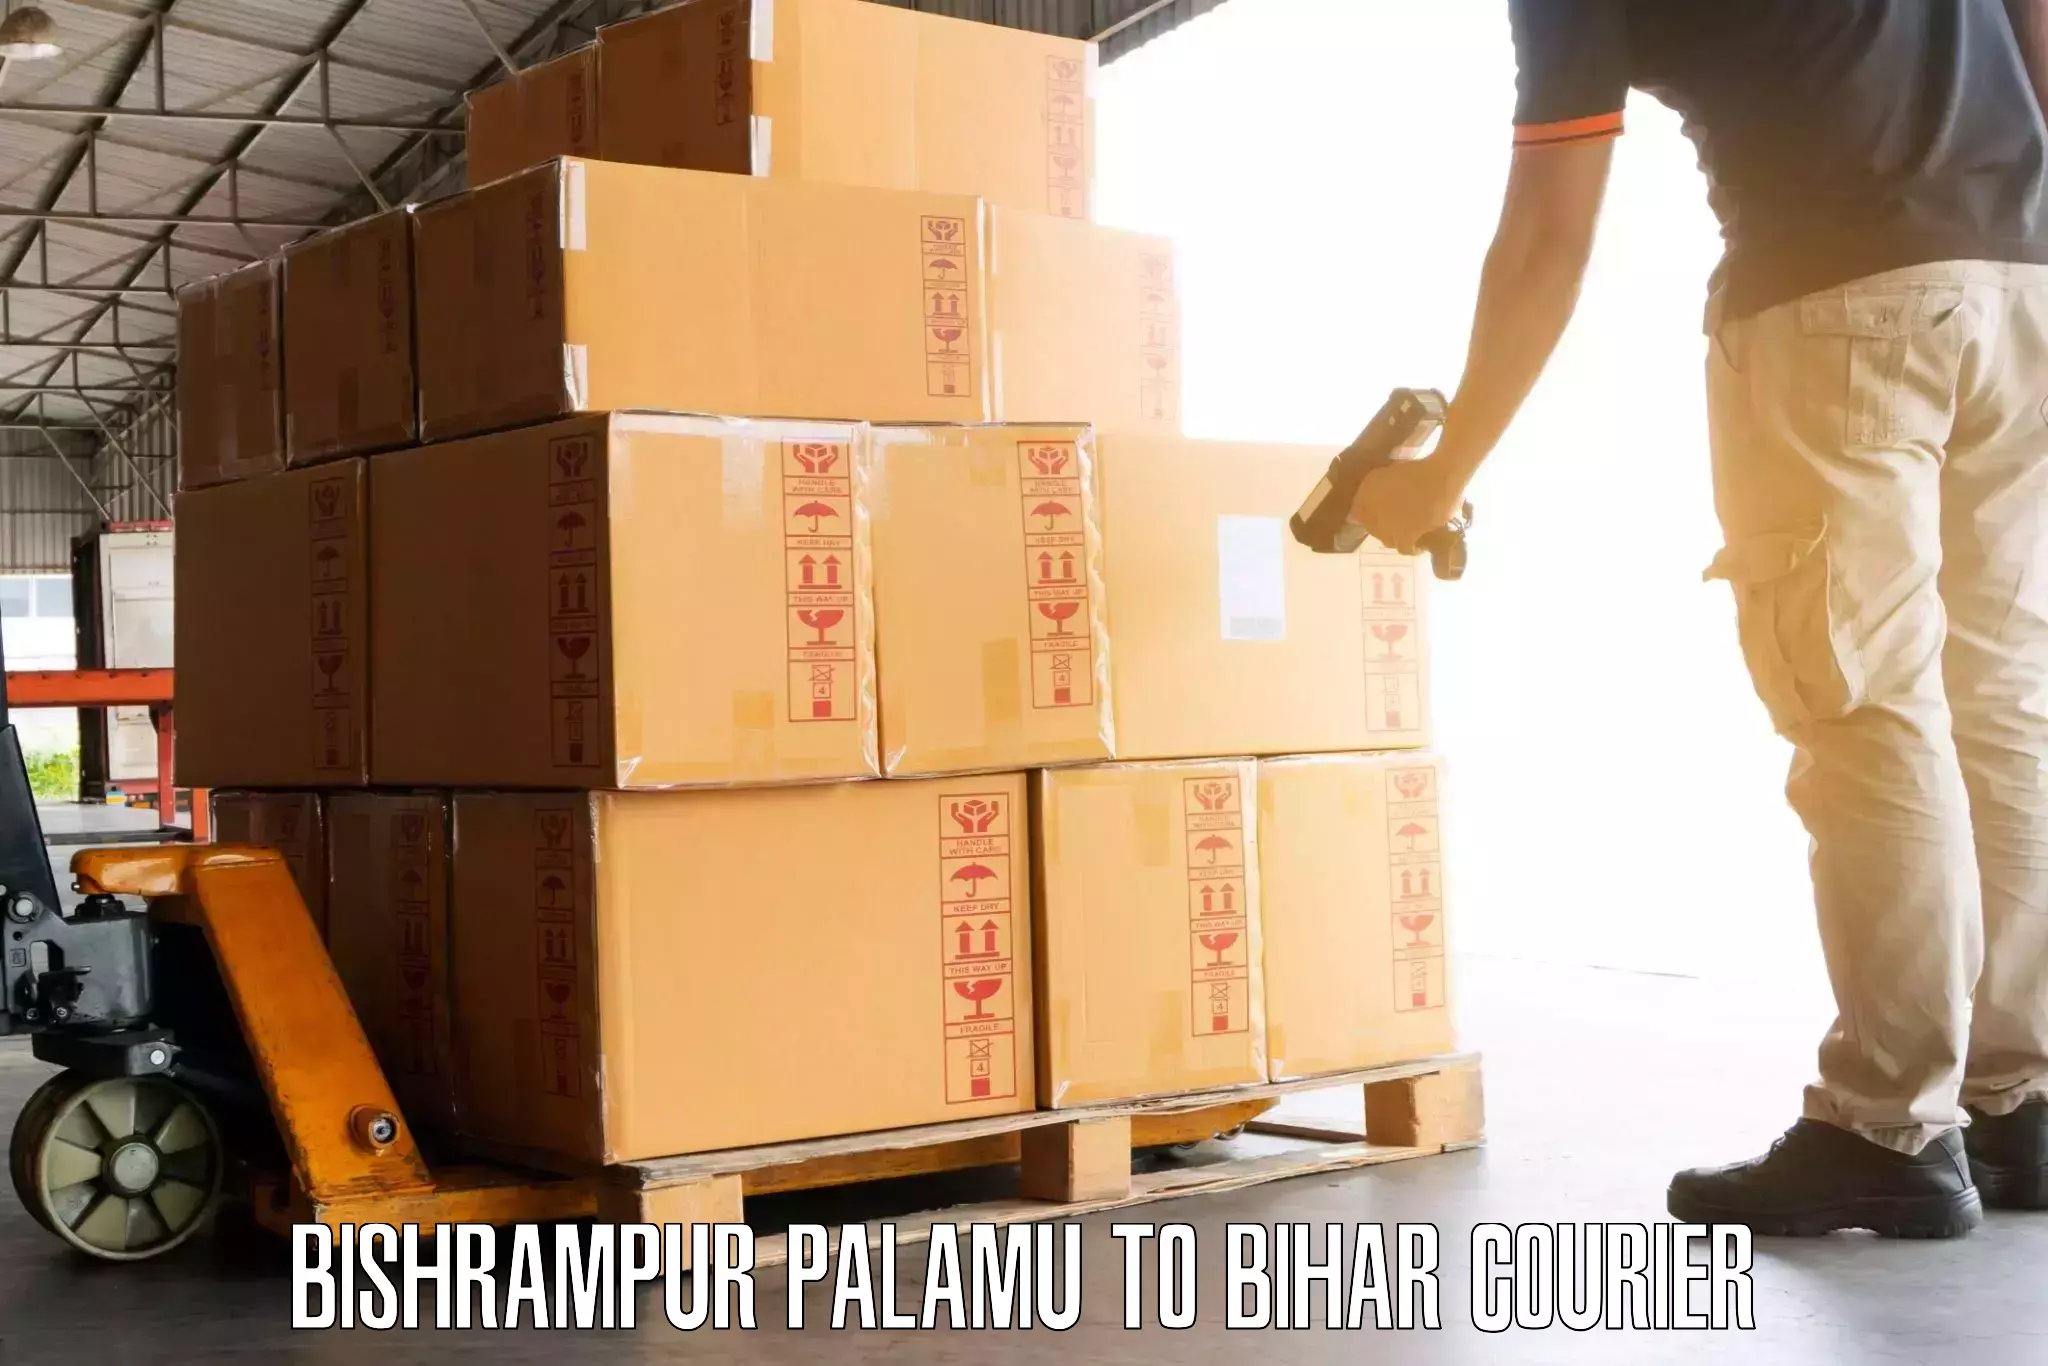 Safe luggage delivery Bishrampur Palamu to Sasaram